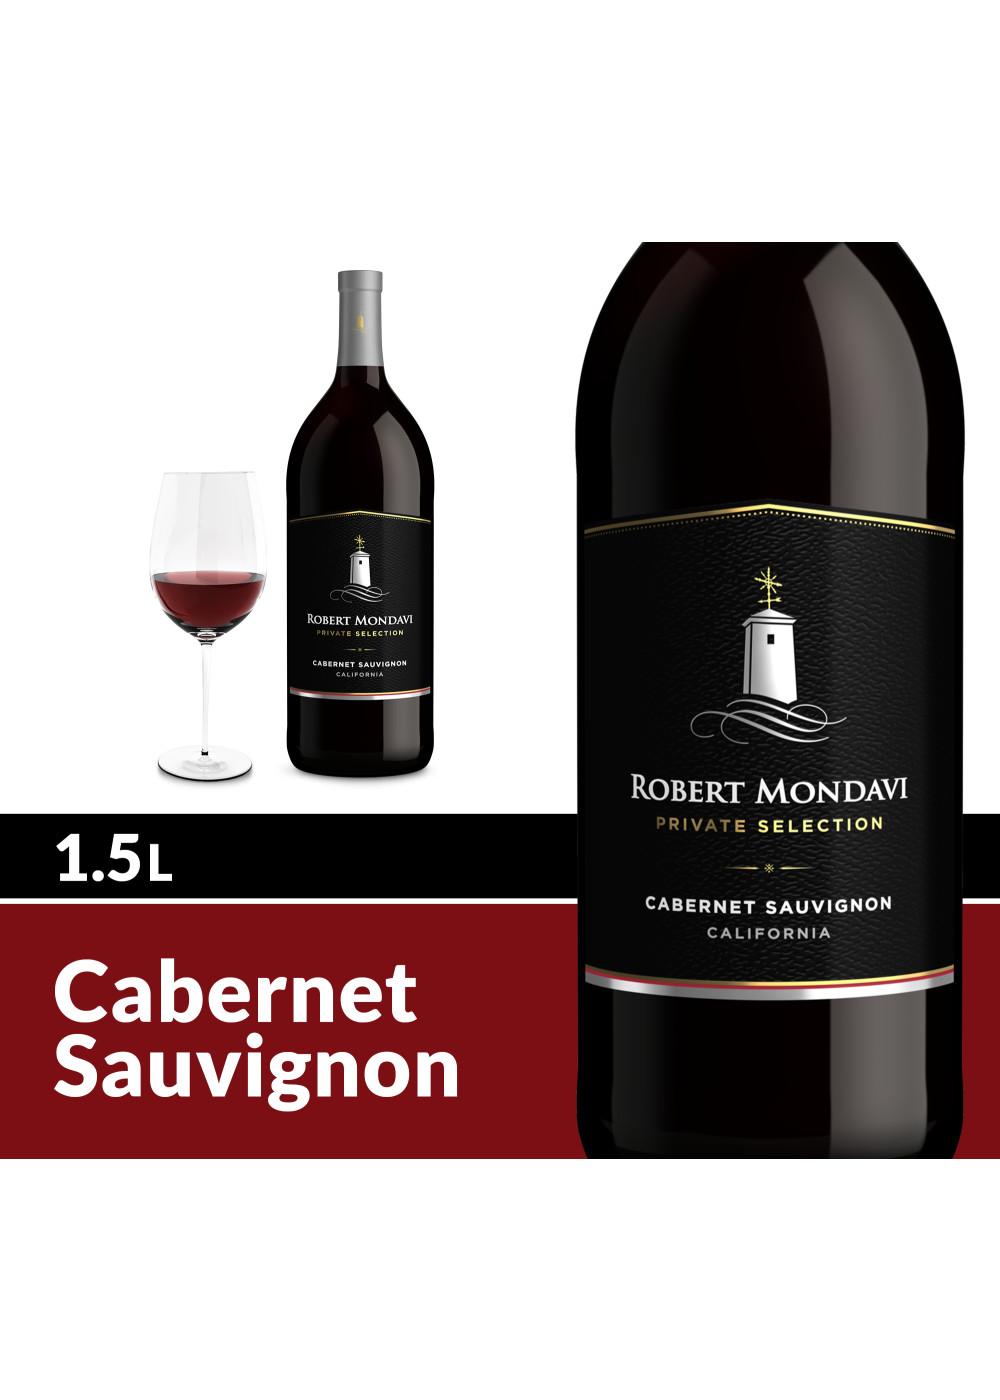 Robert Mondavi Private Selection Cabernet Sauvignon Red Wine; image 4 of 4